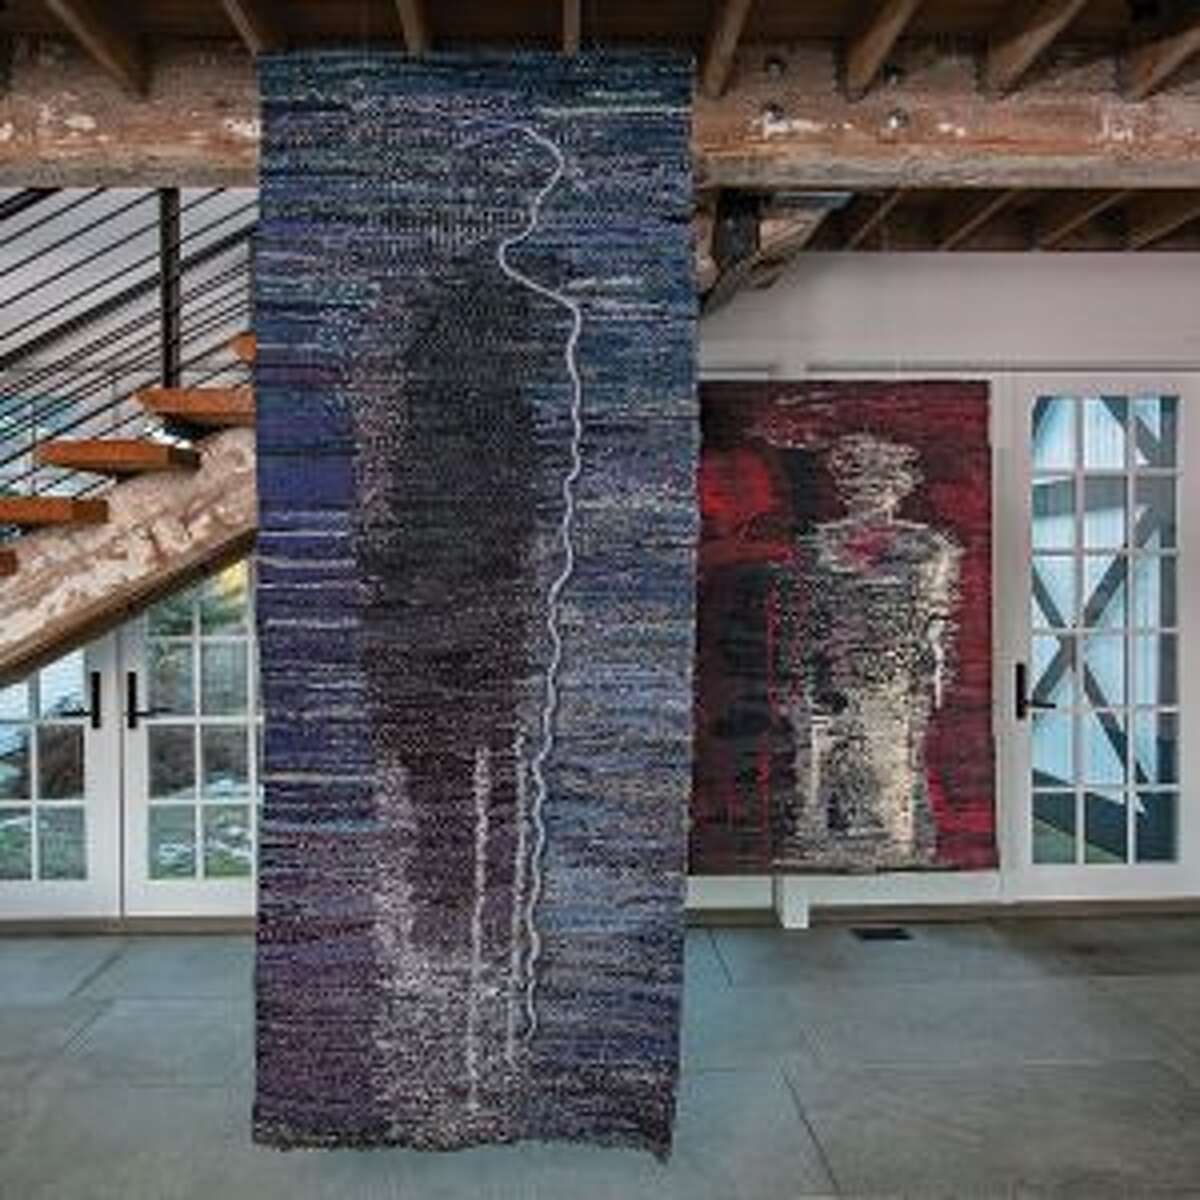 Lilla Kulka's tapestries will be on display.